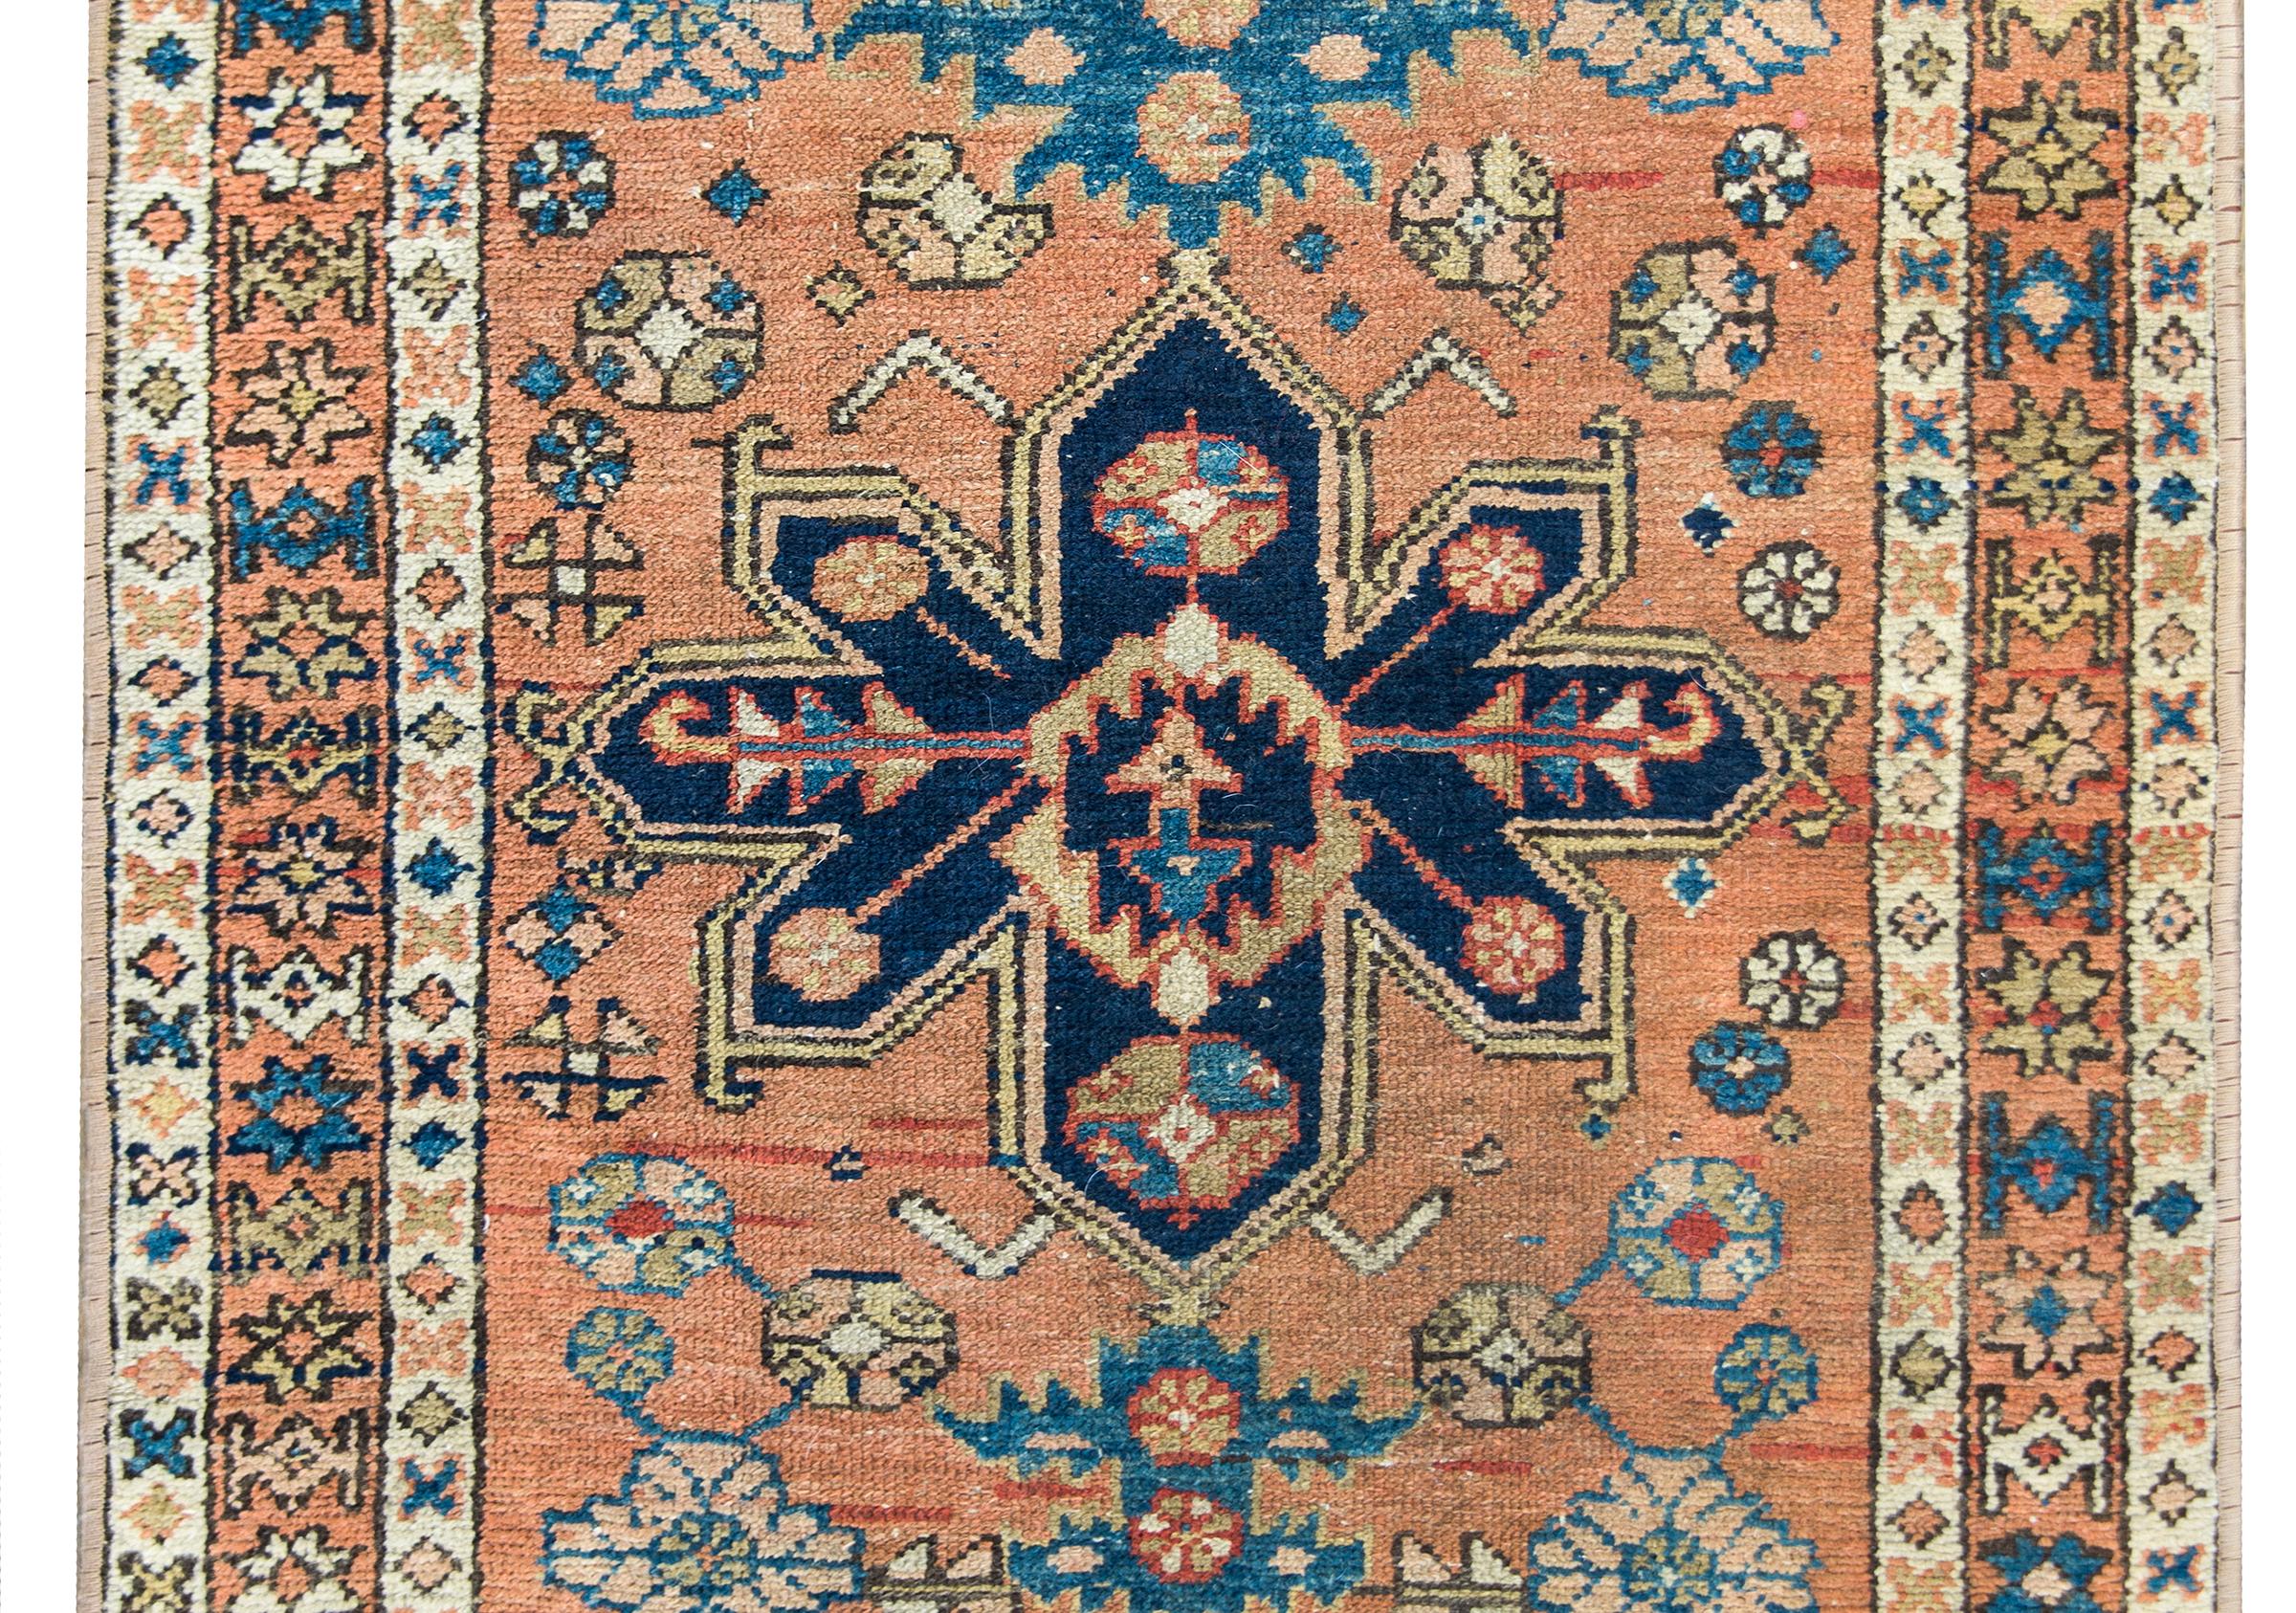 Un beau tapis persan Karadja du début du 20e siècle avec un médaillon floral stylisé vivant au milieu d'un champ de fleurs et de feuilles plus stylisées, entouré d'une simple bordure de petites fleurs stylisées répétées, et le tout tissé en indigo,